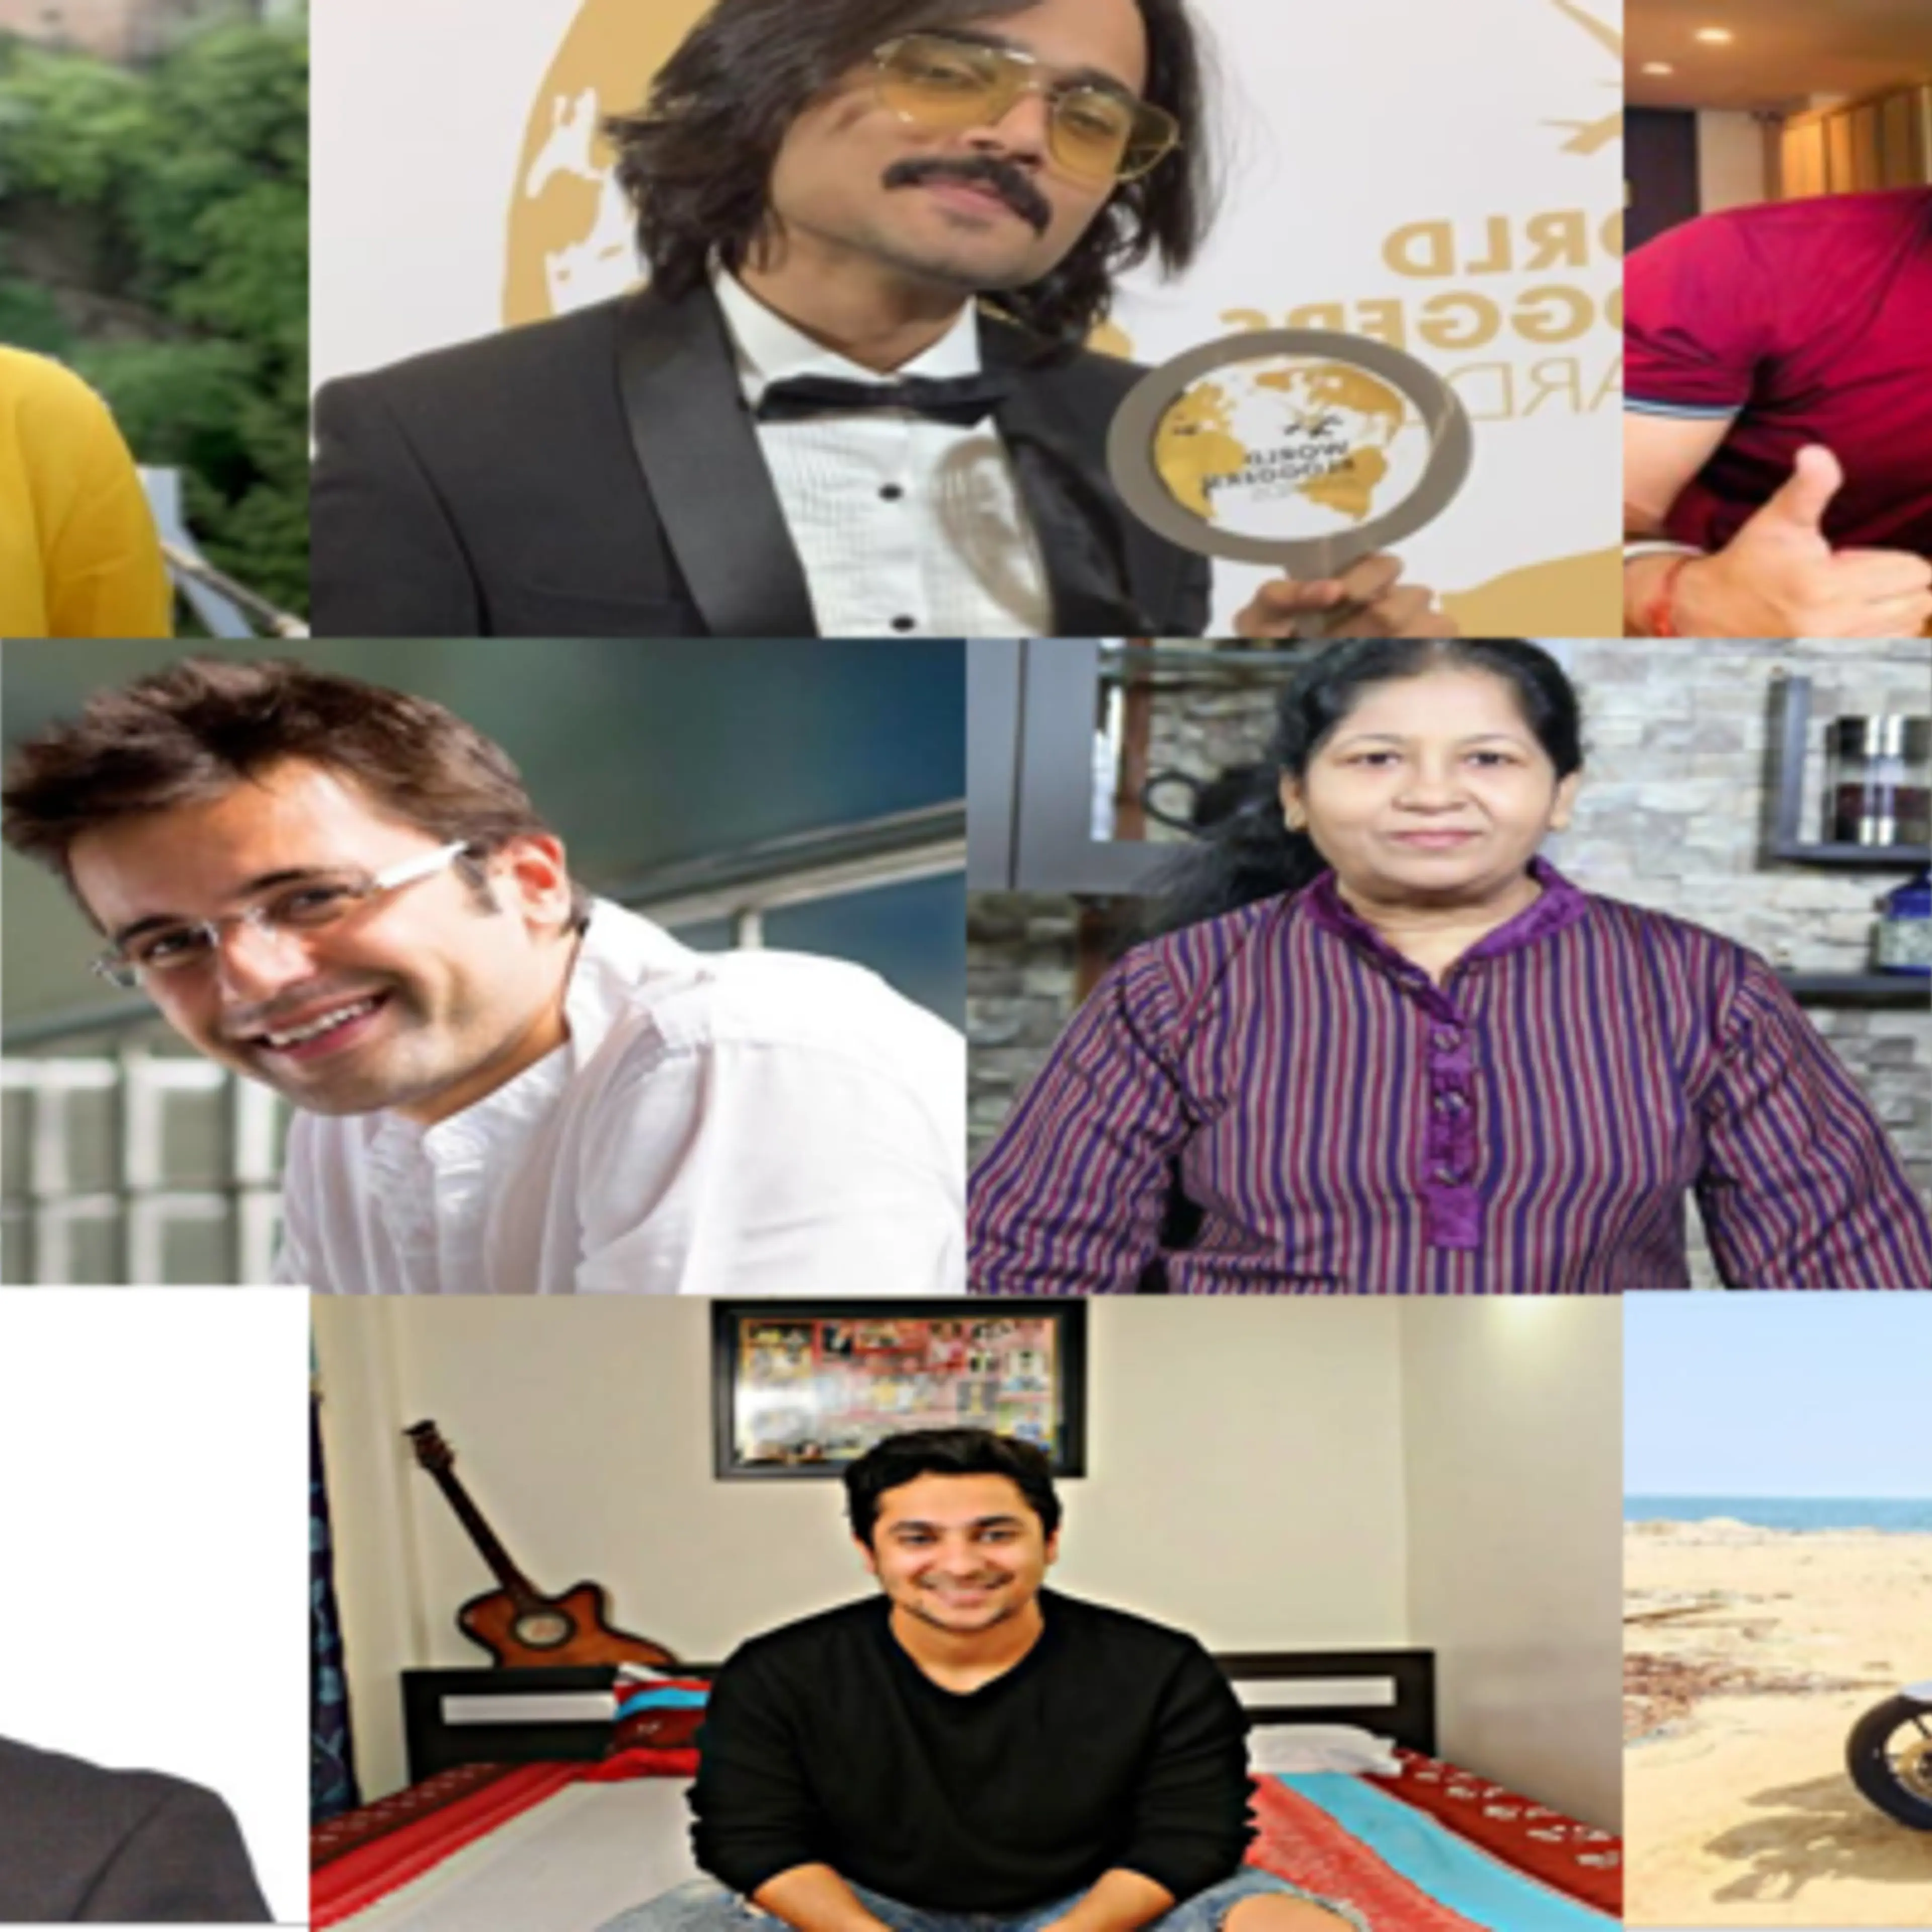 भारत के टॉप 10 यूट्यूब सुपरस्टार्स, अपने कॉमिक सेंस और सोशल संदेशों से कर रहे हैं सबके दिलों पर राज